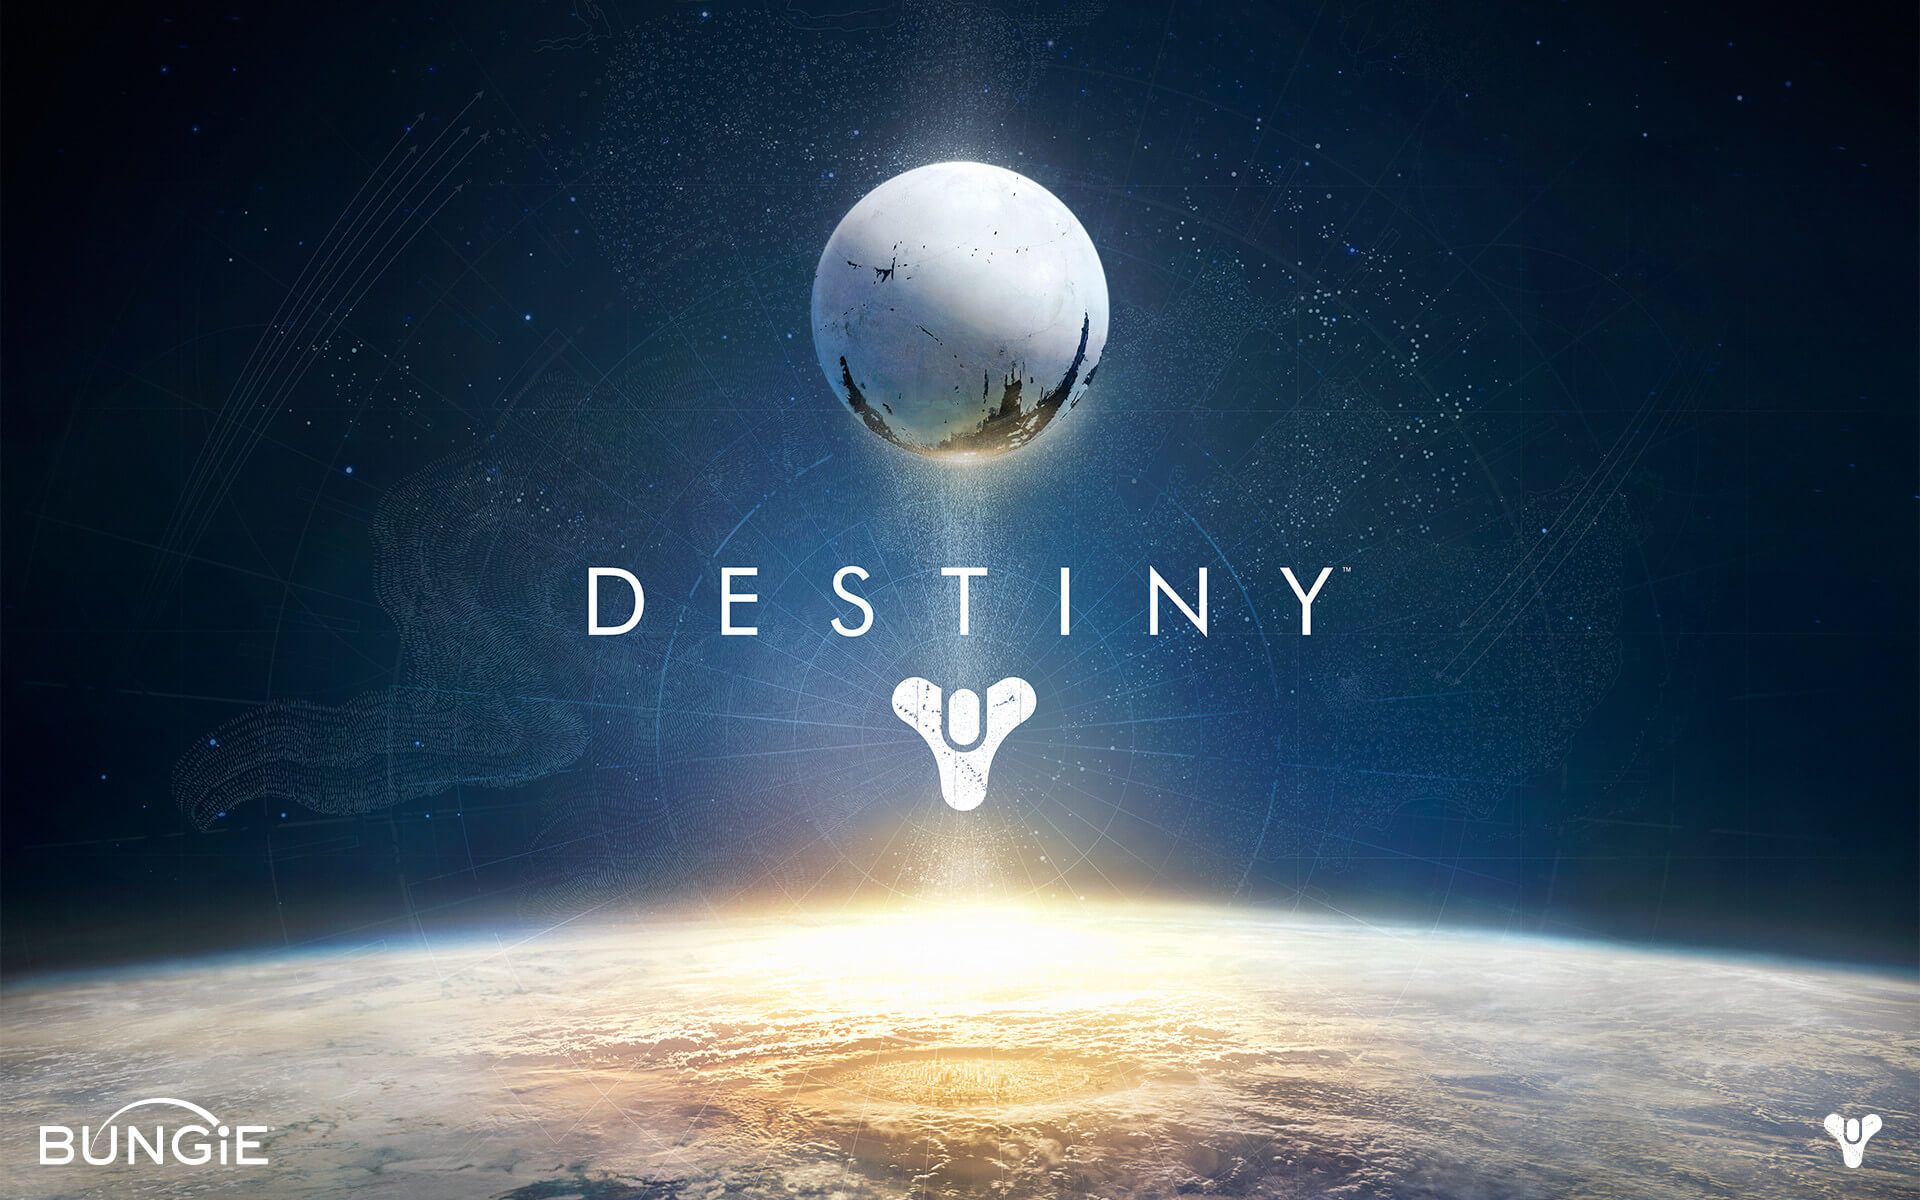 'Destiny' concept art - logo